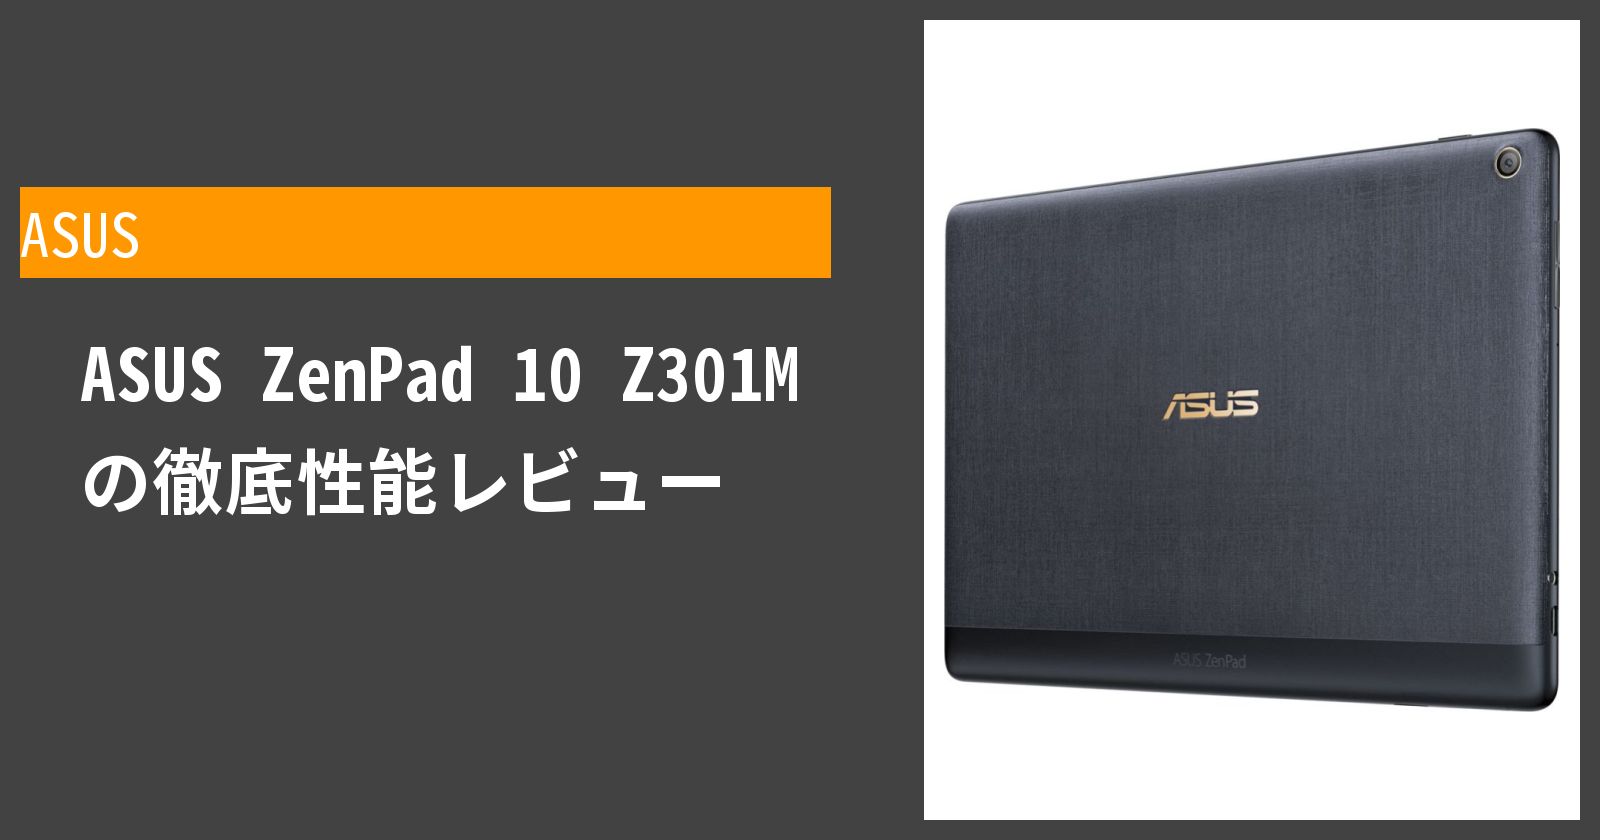 ASUS ZenPad 10 Z301Mの性能や機能を評価。買うべきかどうかを評価しま 